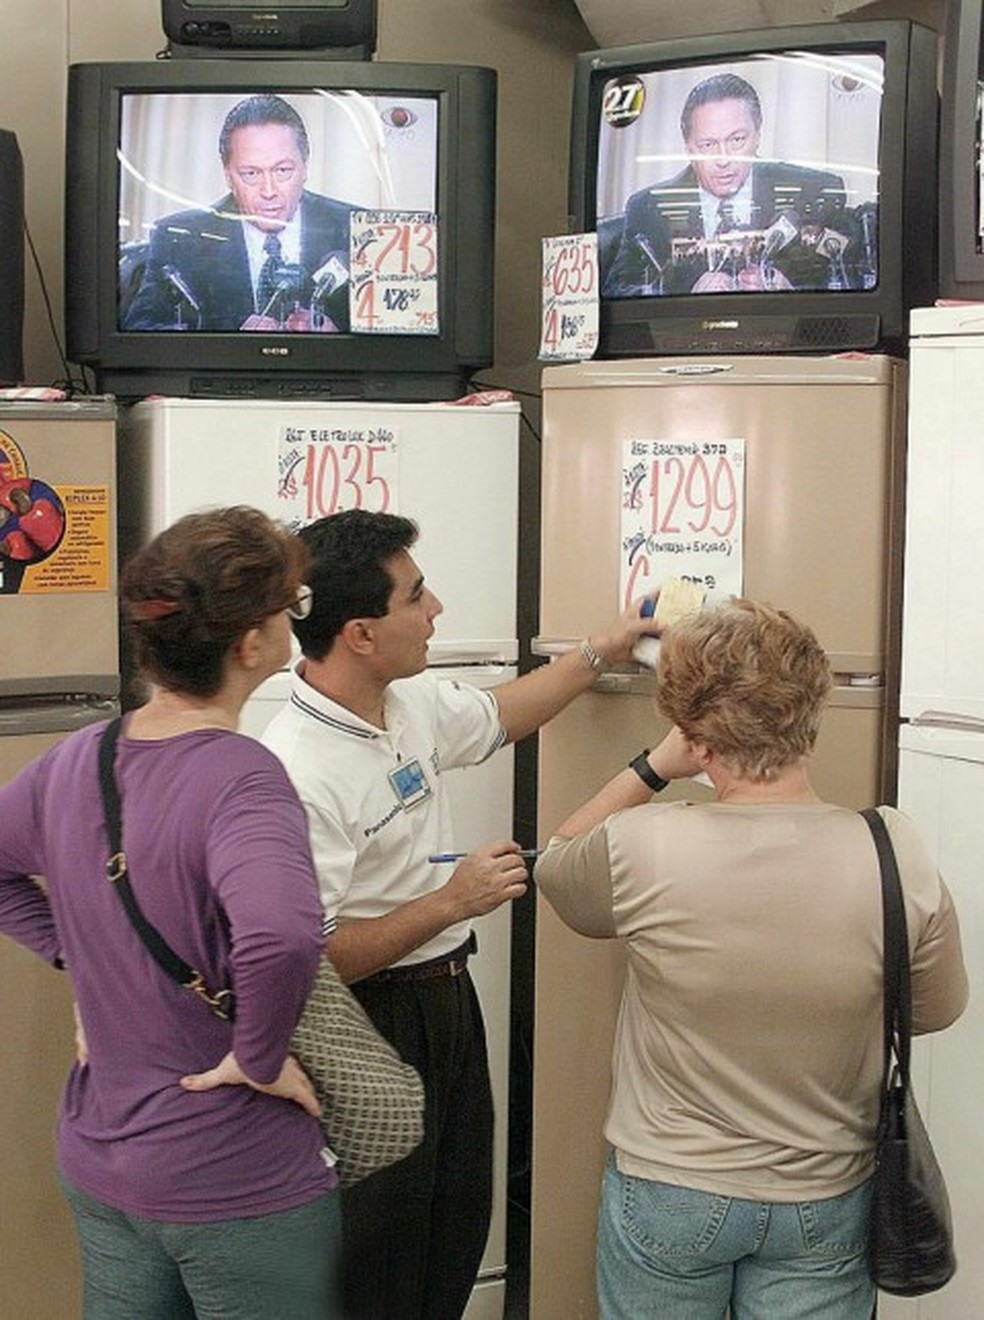 Clientes na loja de eletrodomésticos enquanto o ministro Pedro Malan fala sobre cortes no Orçamento — Foto: Antônio Scorza